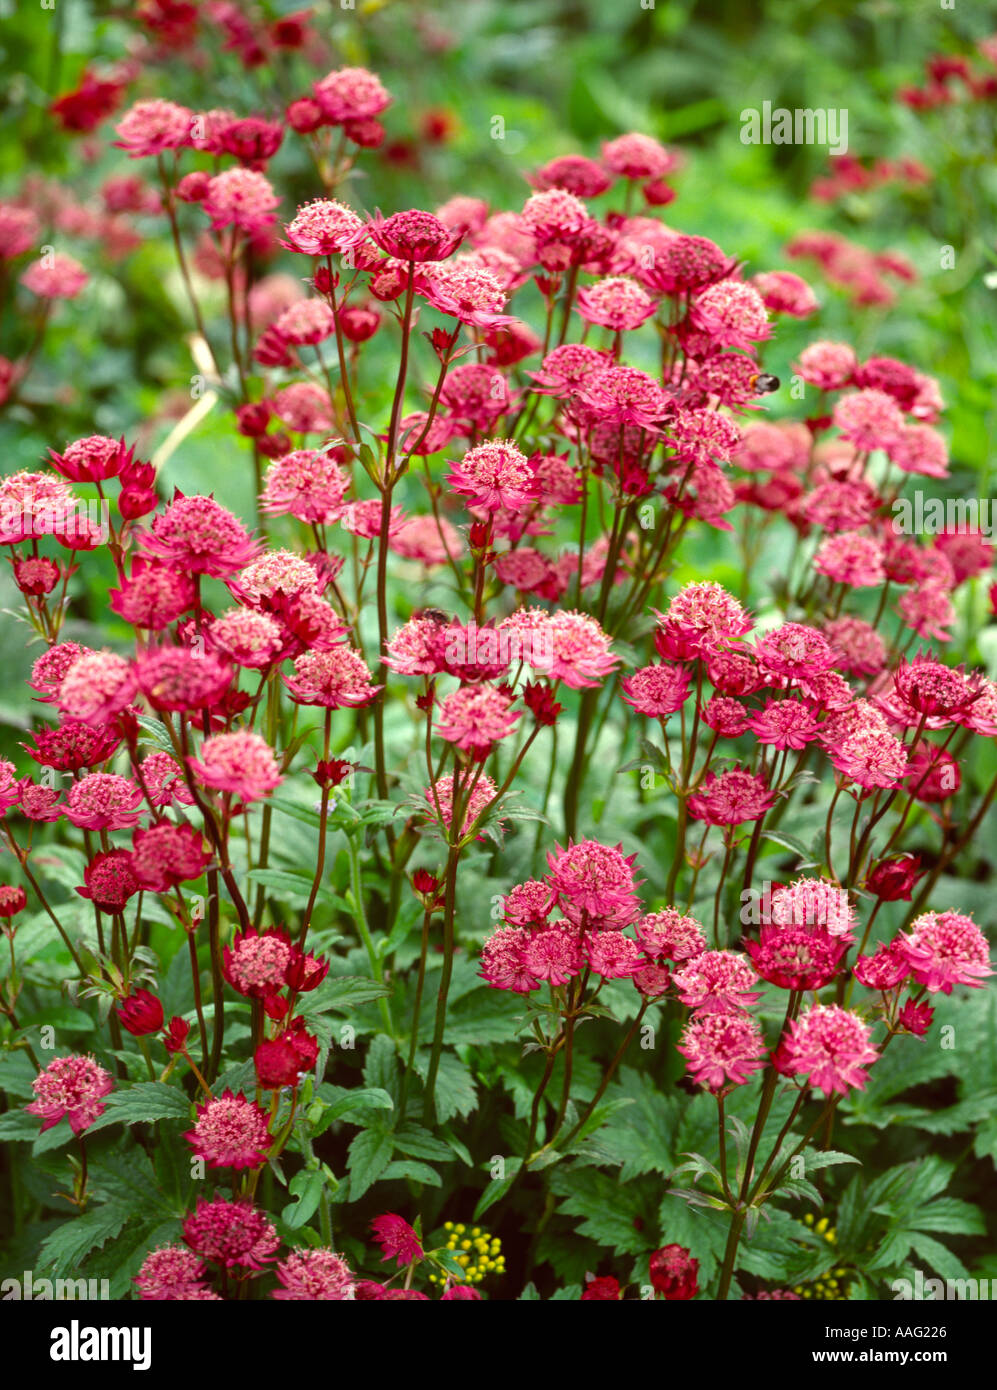 red pink pom pom flower garden Stock Photo - Alamy